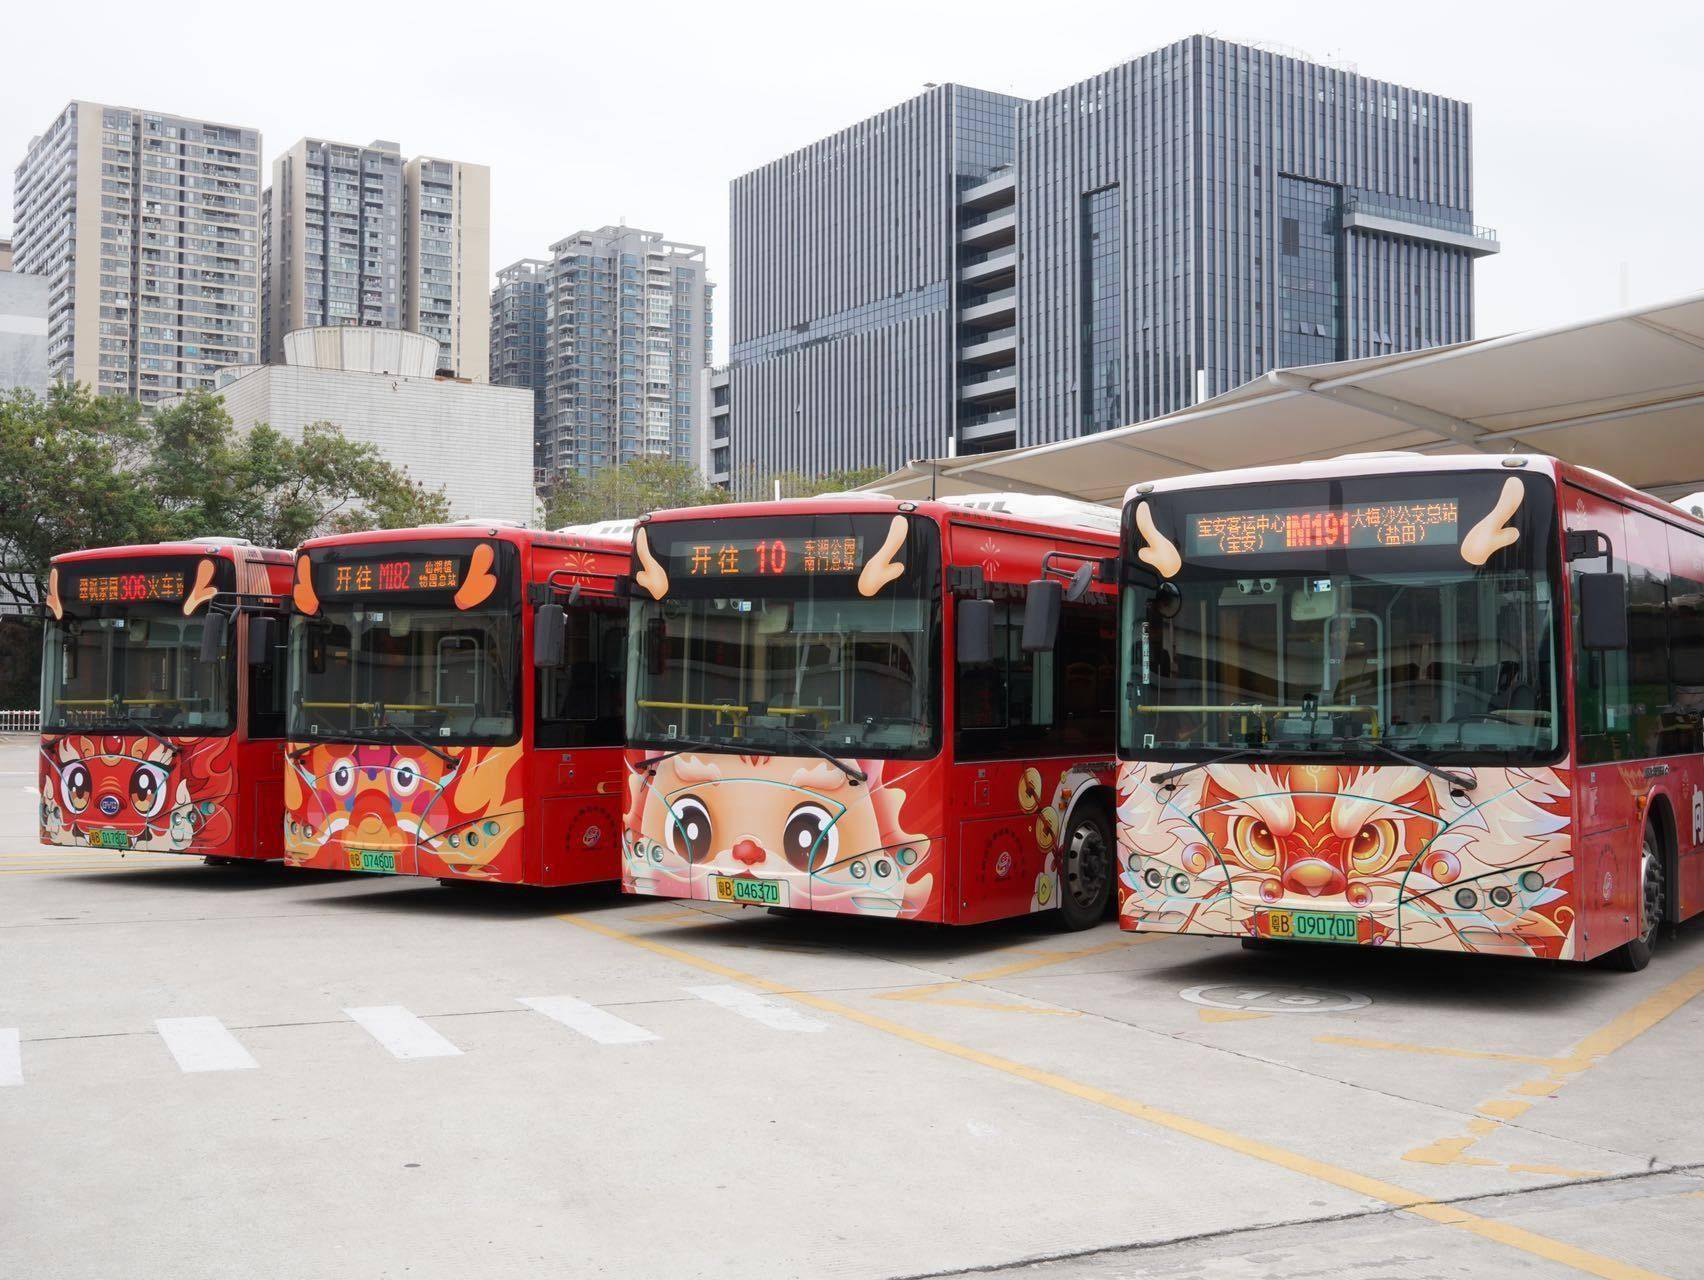 集七龙召神龙!深圳巴士集团龙年主题巴士上线了